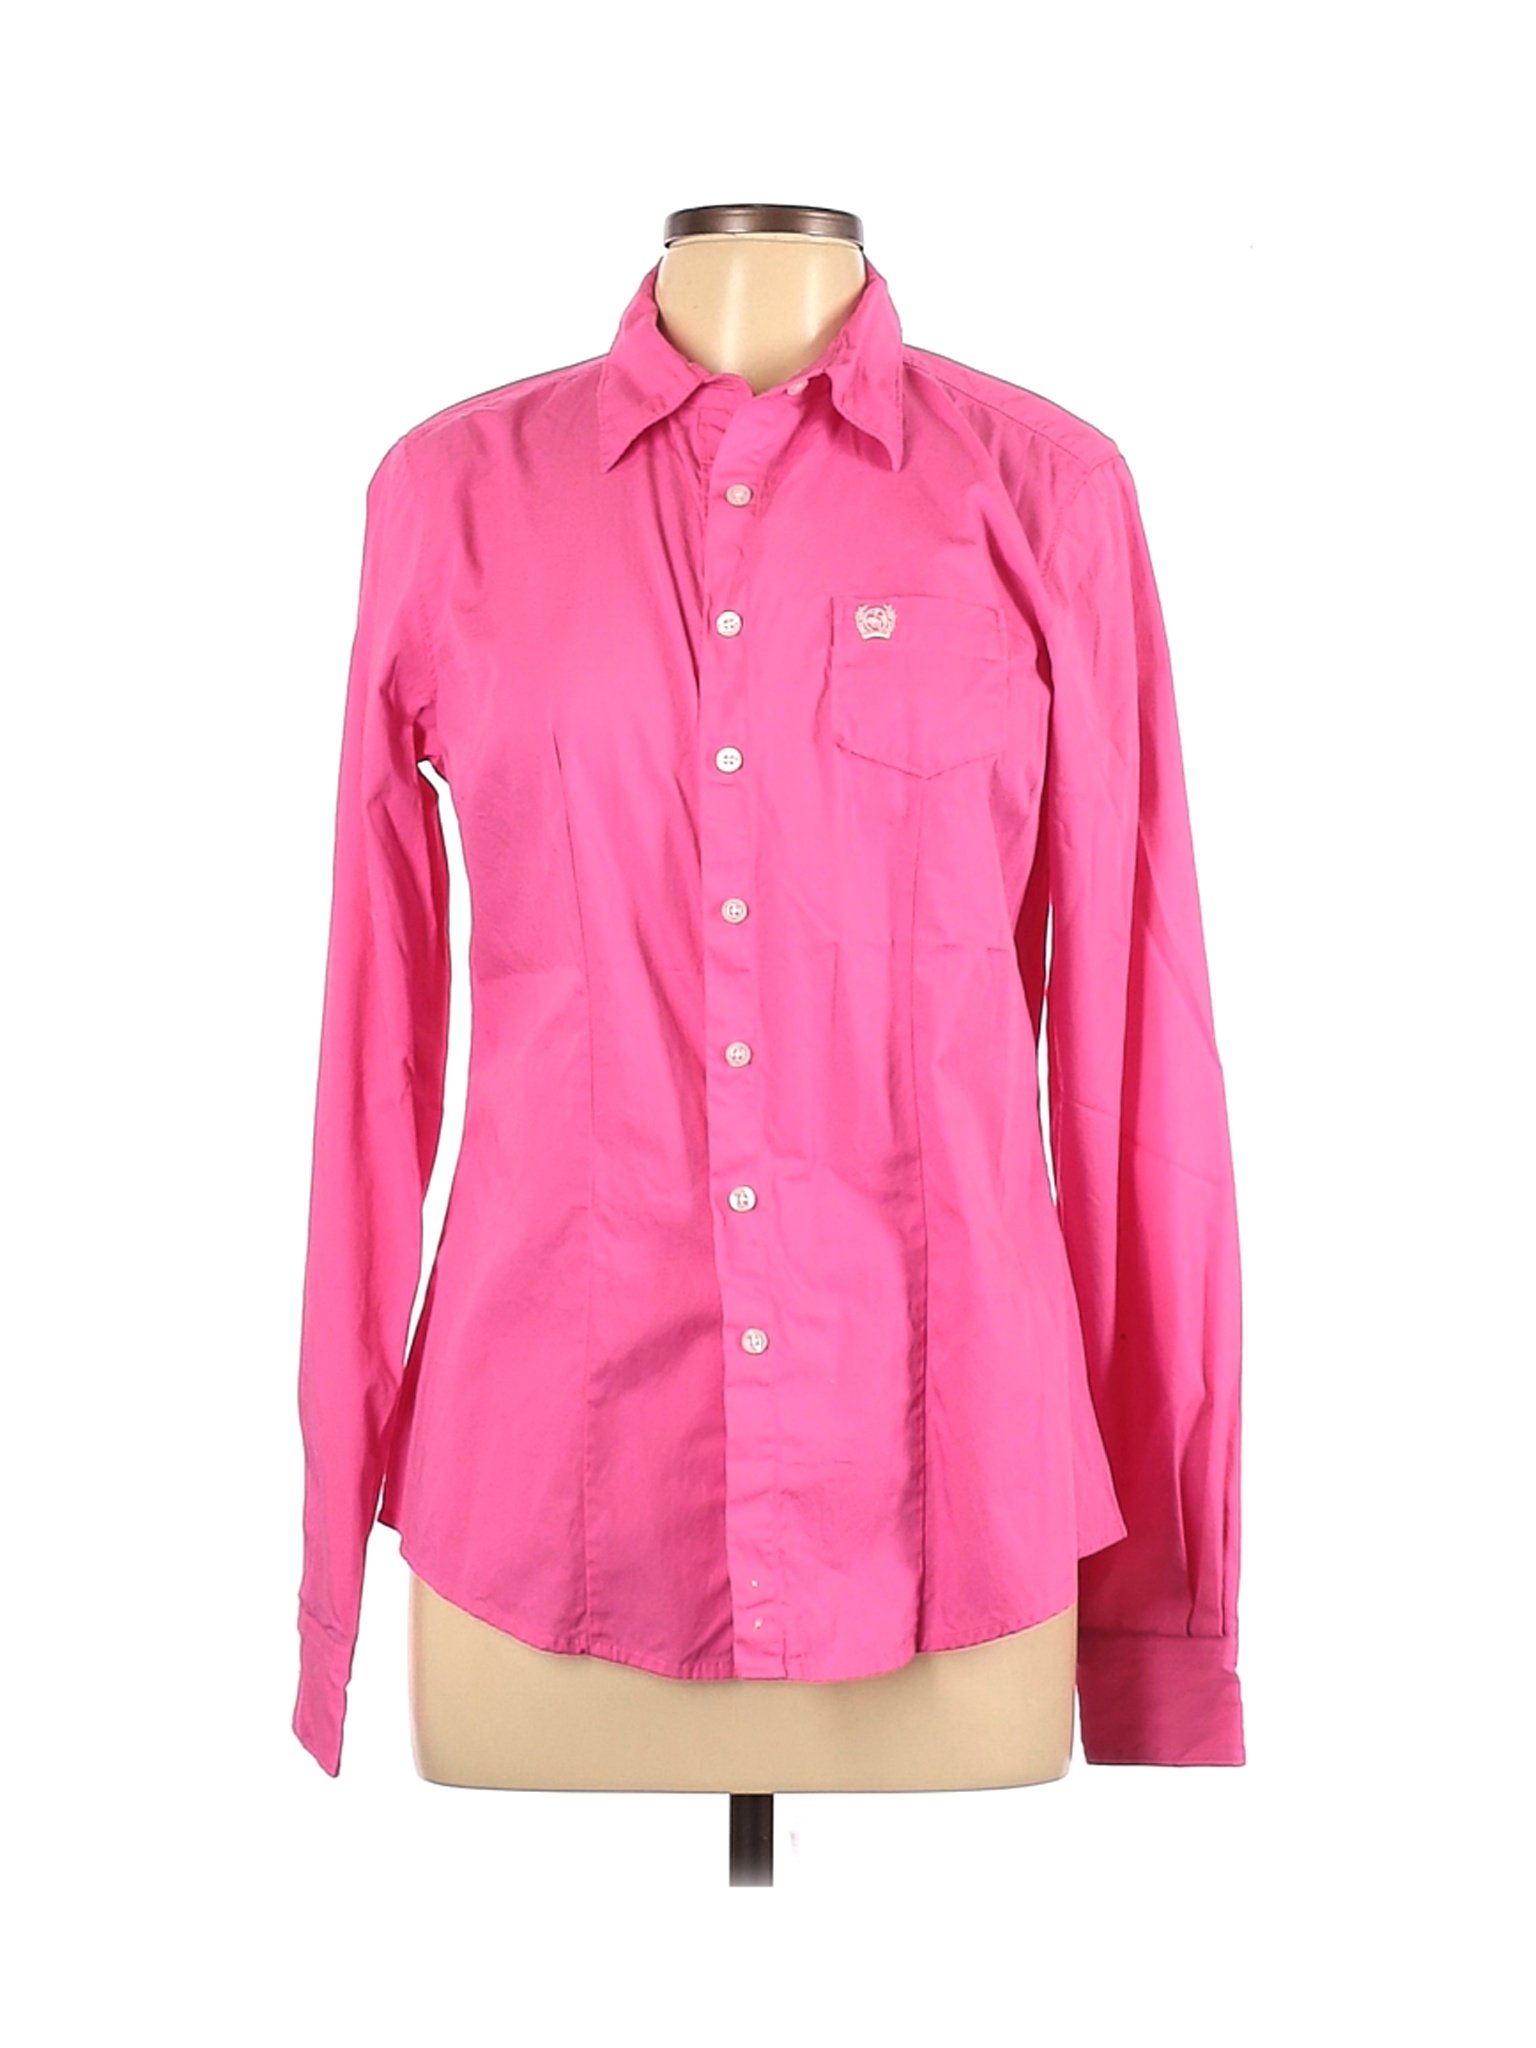 Assorted Brands Women Pink Long Sleeve Button-Down Shirt L | eBay